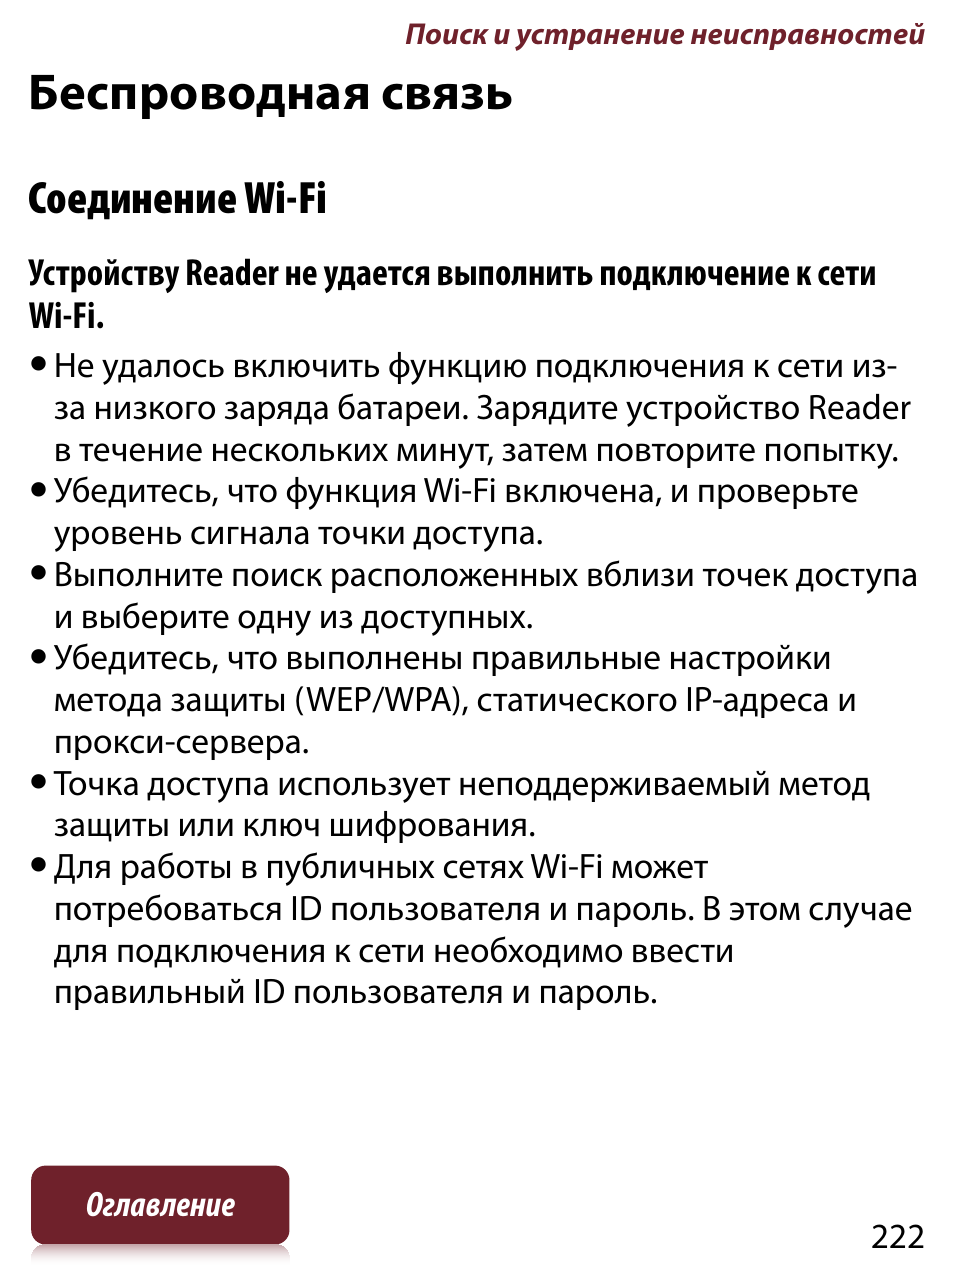 Беспроводная связь, Соединение wi-fi | Инструкция по эксплуатации Sony PRS-T1 | Страница 222 / 267